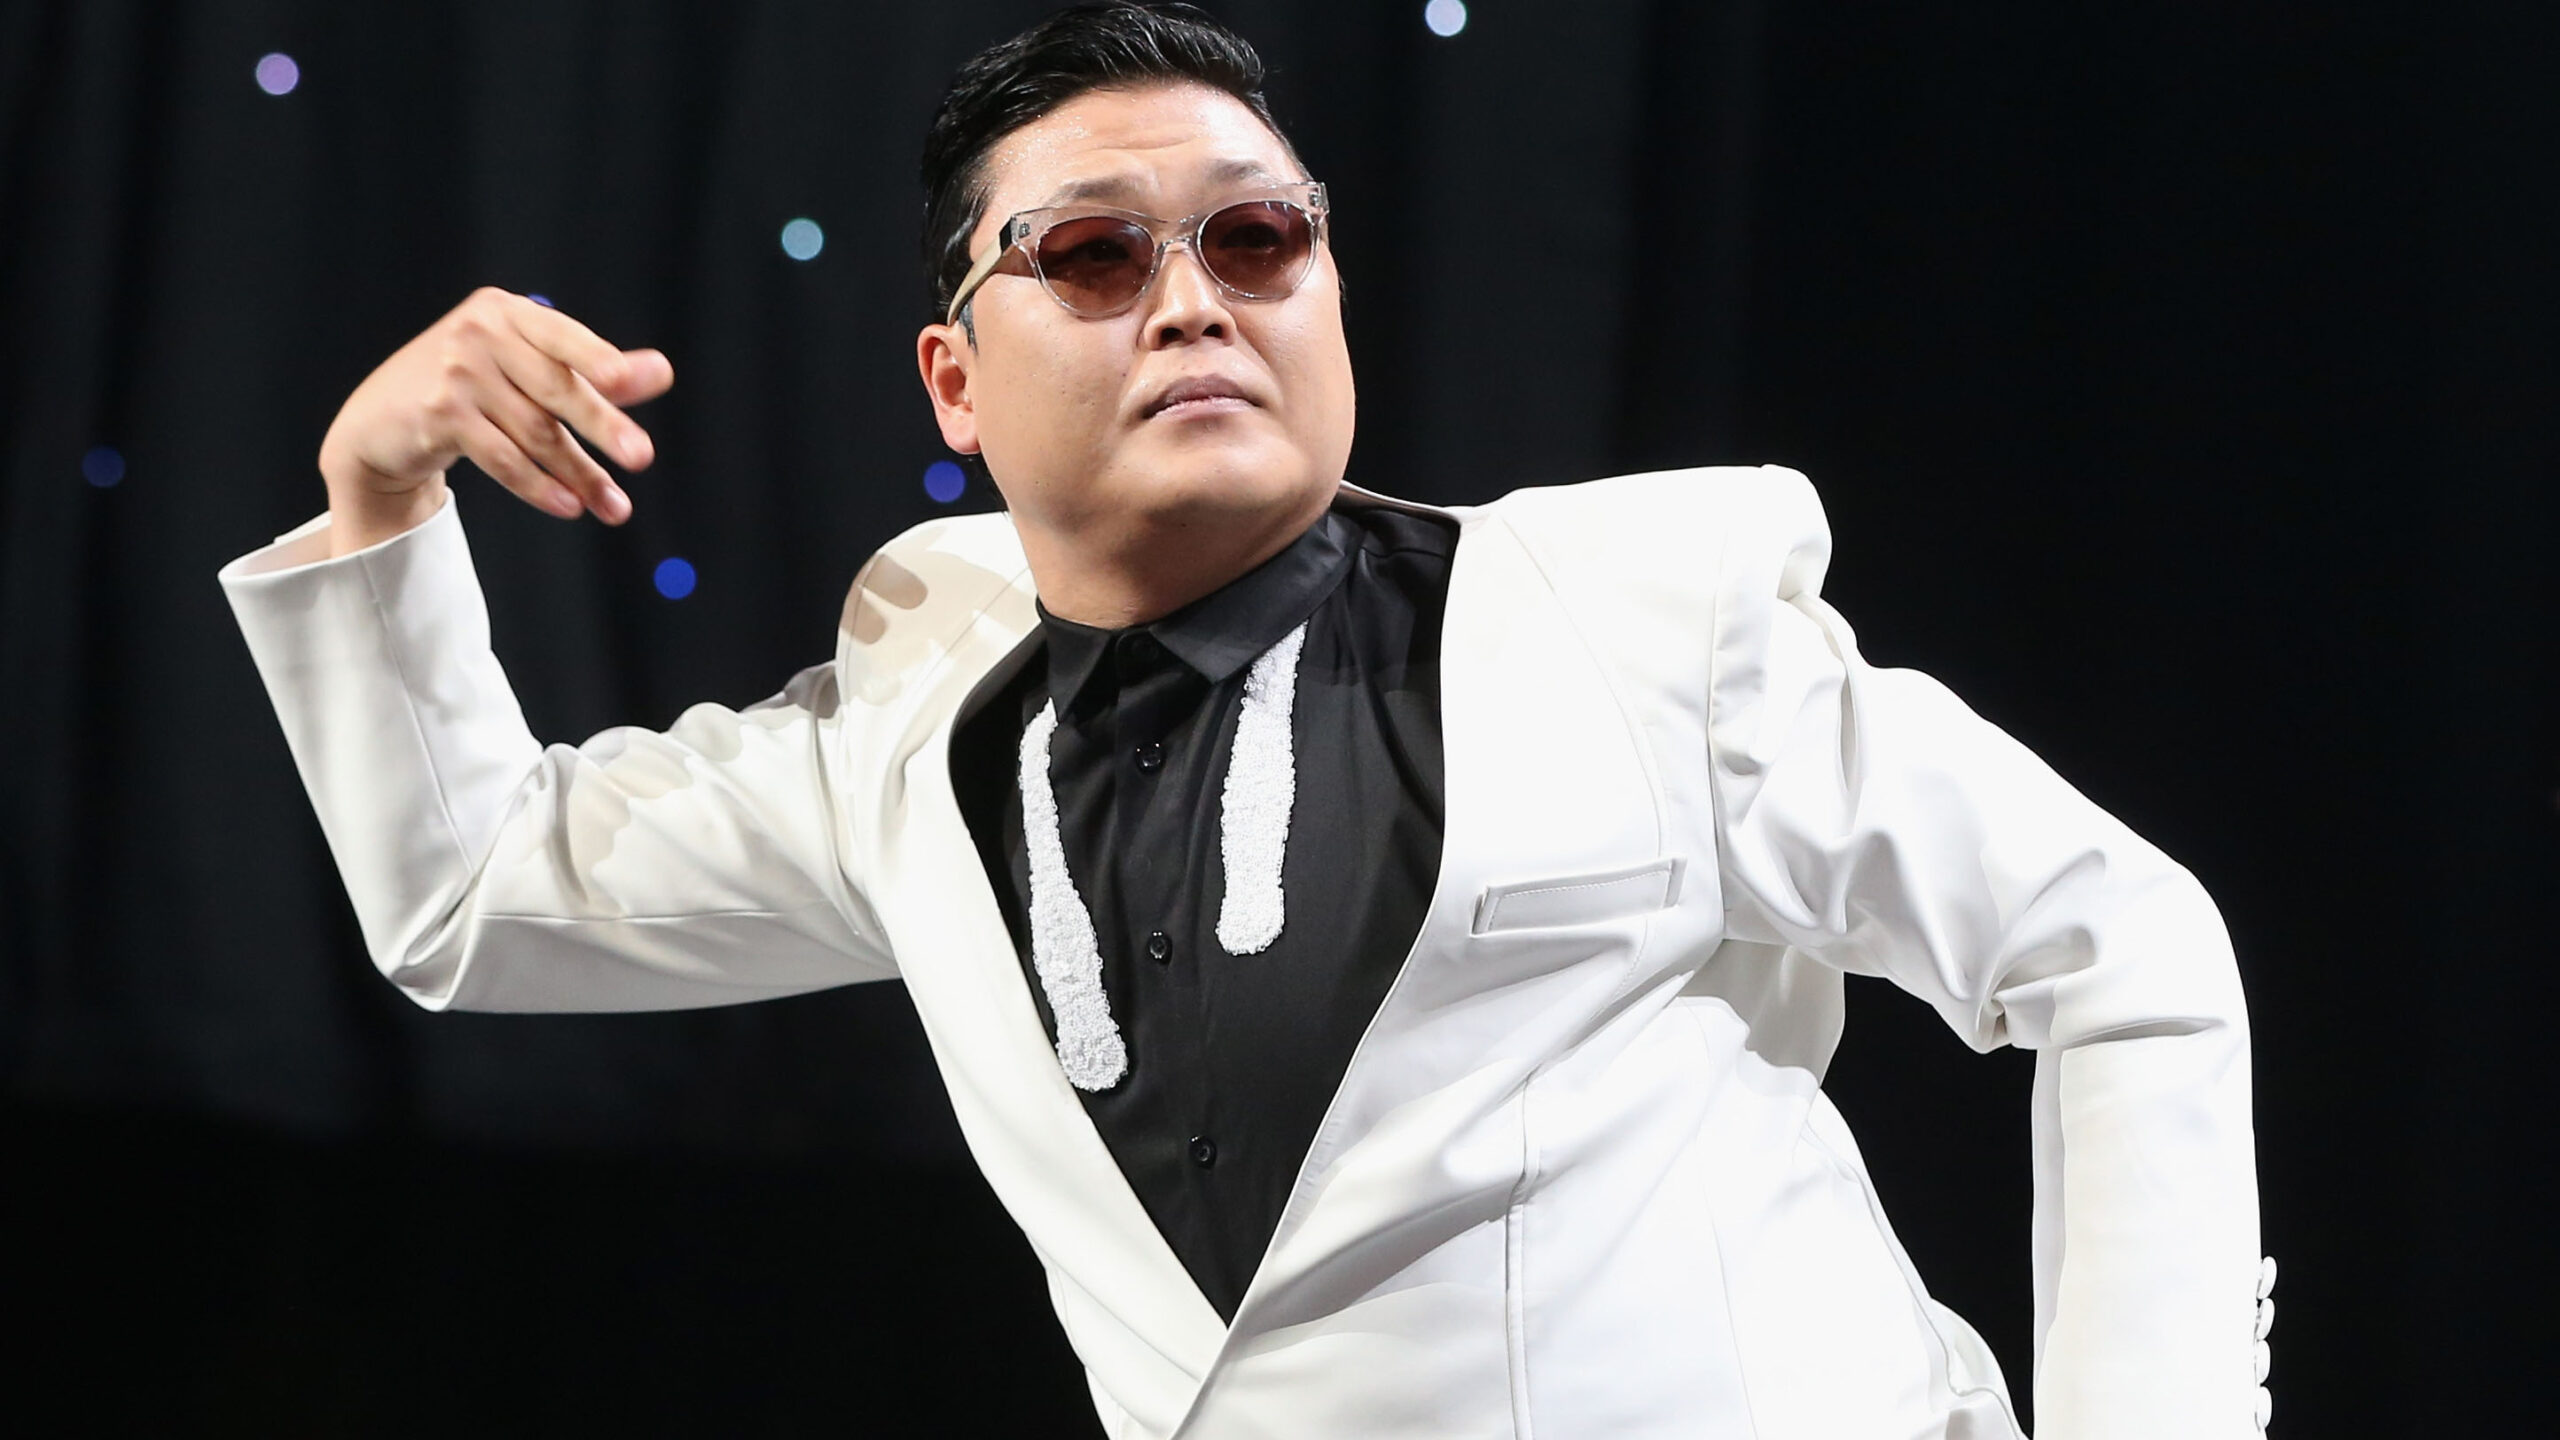 Is Psy popular in South Korea?